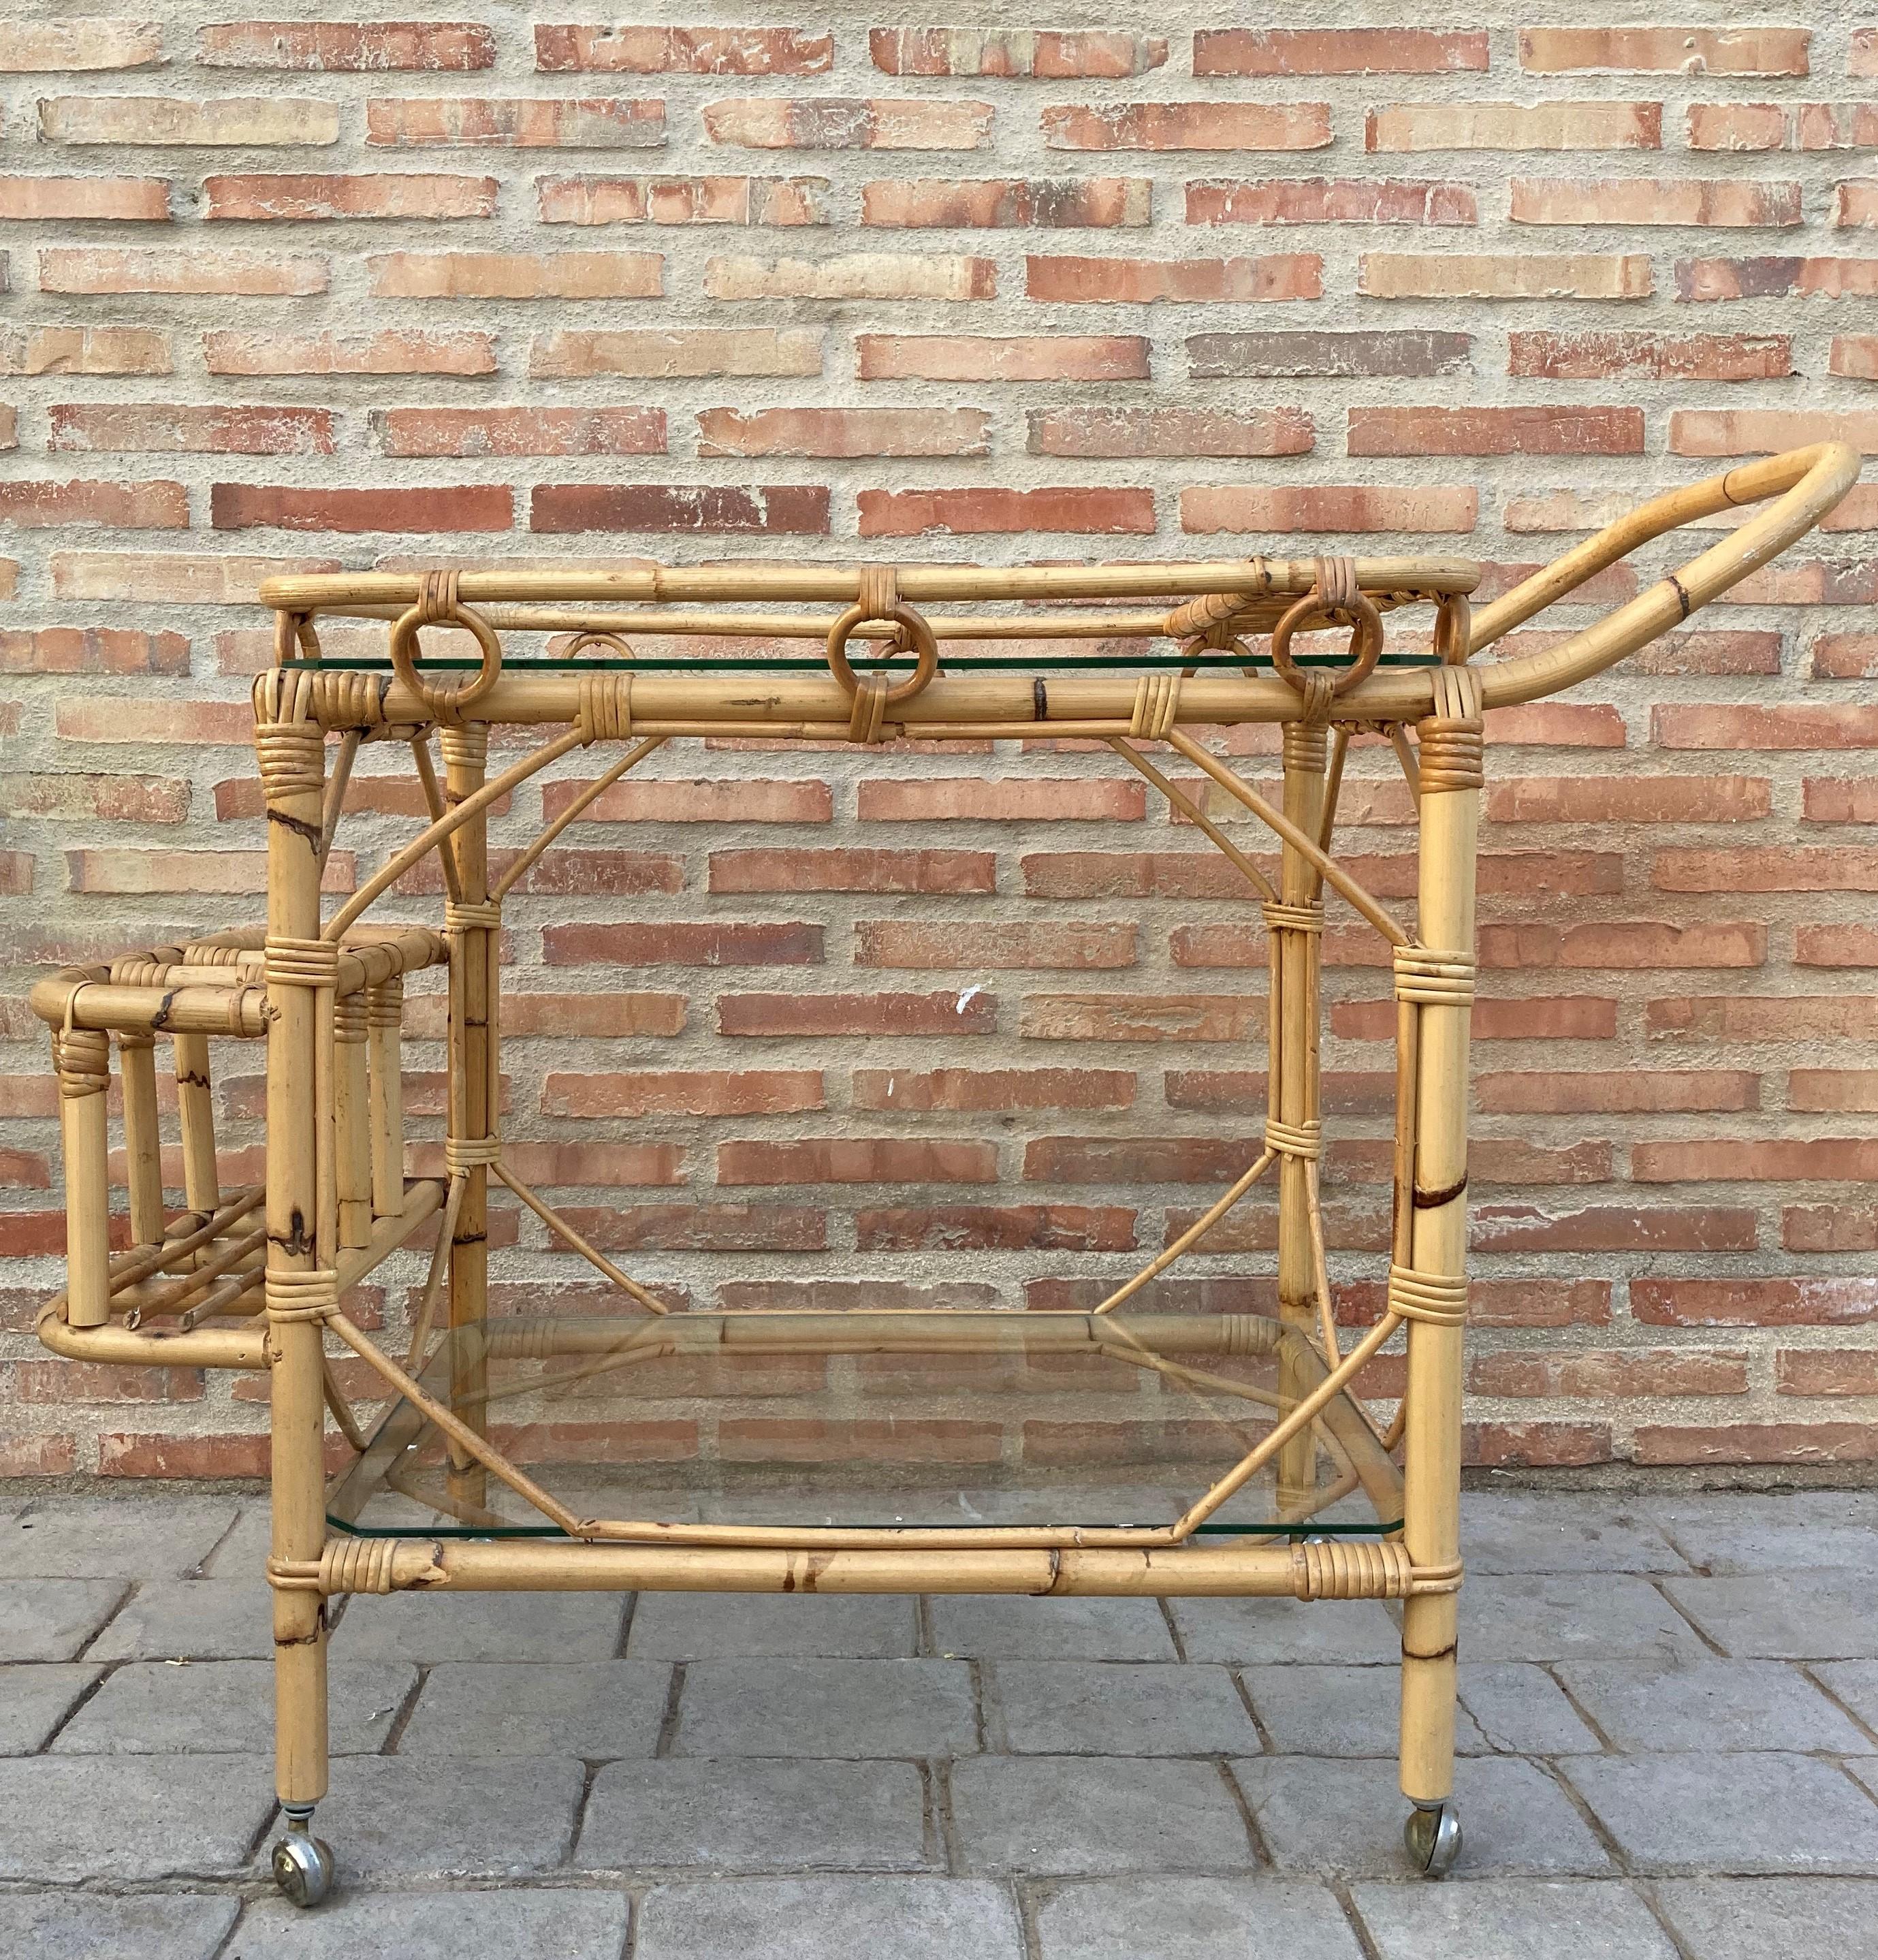 Chariot à thé en bambou de style Mid-Century Modern, Fabulous des années 1950. Fabriqué en bambou avec deux grandes roues. Porte-bouteilles à l'arrière.
En parfait état.
Parfait pour un jardin de plantes en pot ou pour un rangement supplémentaire